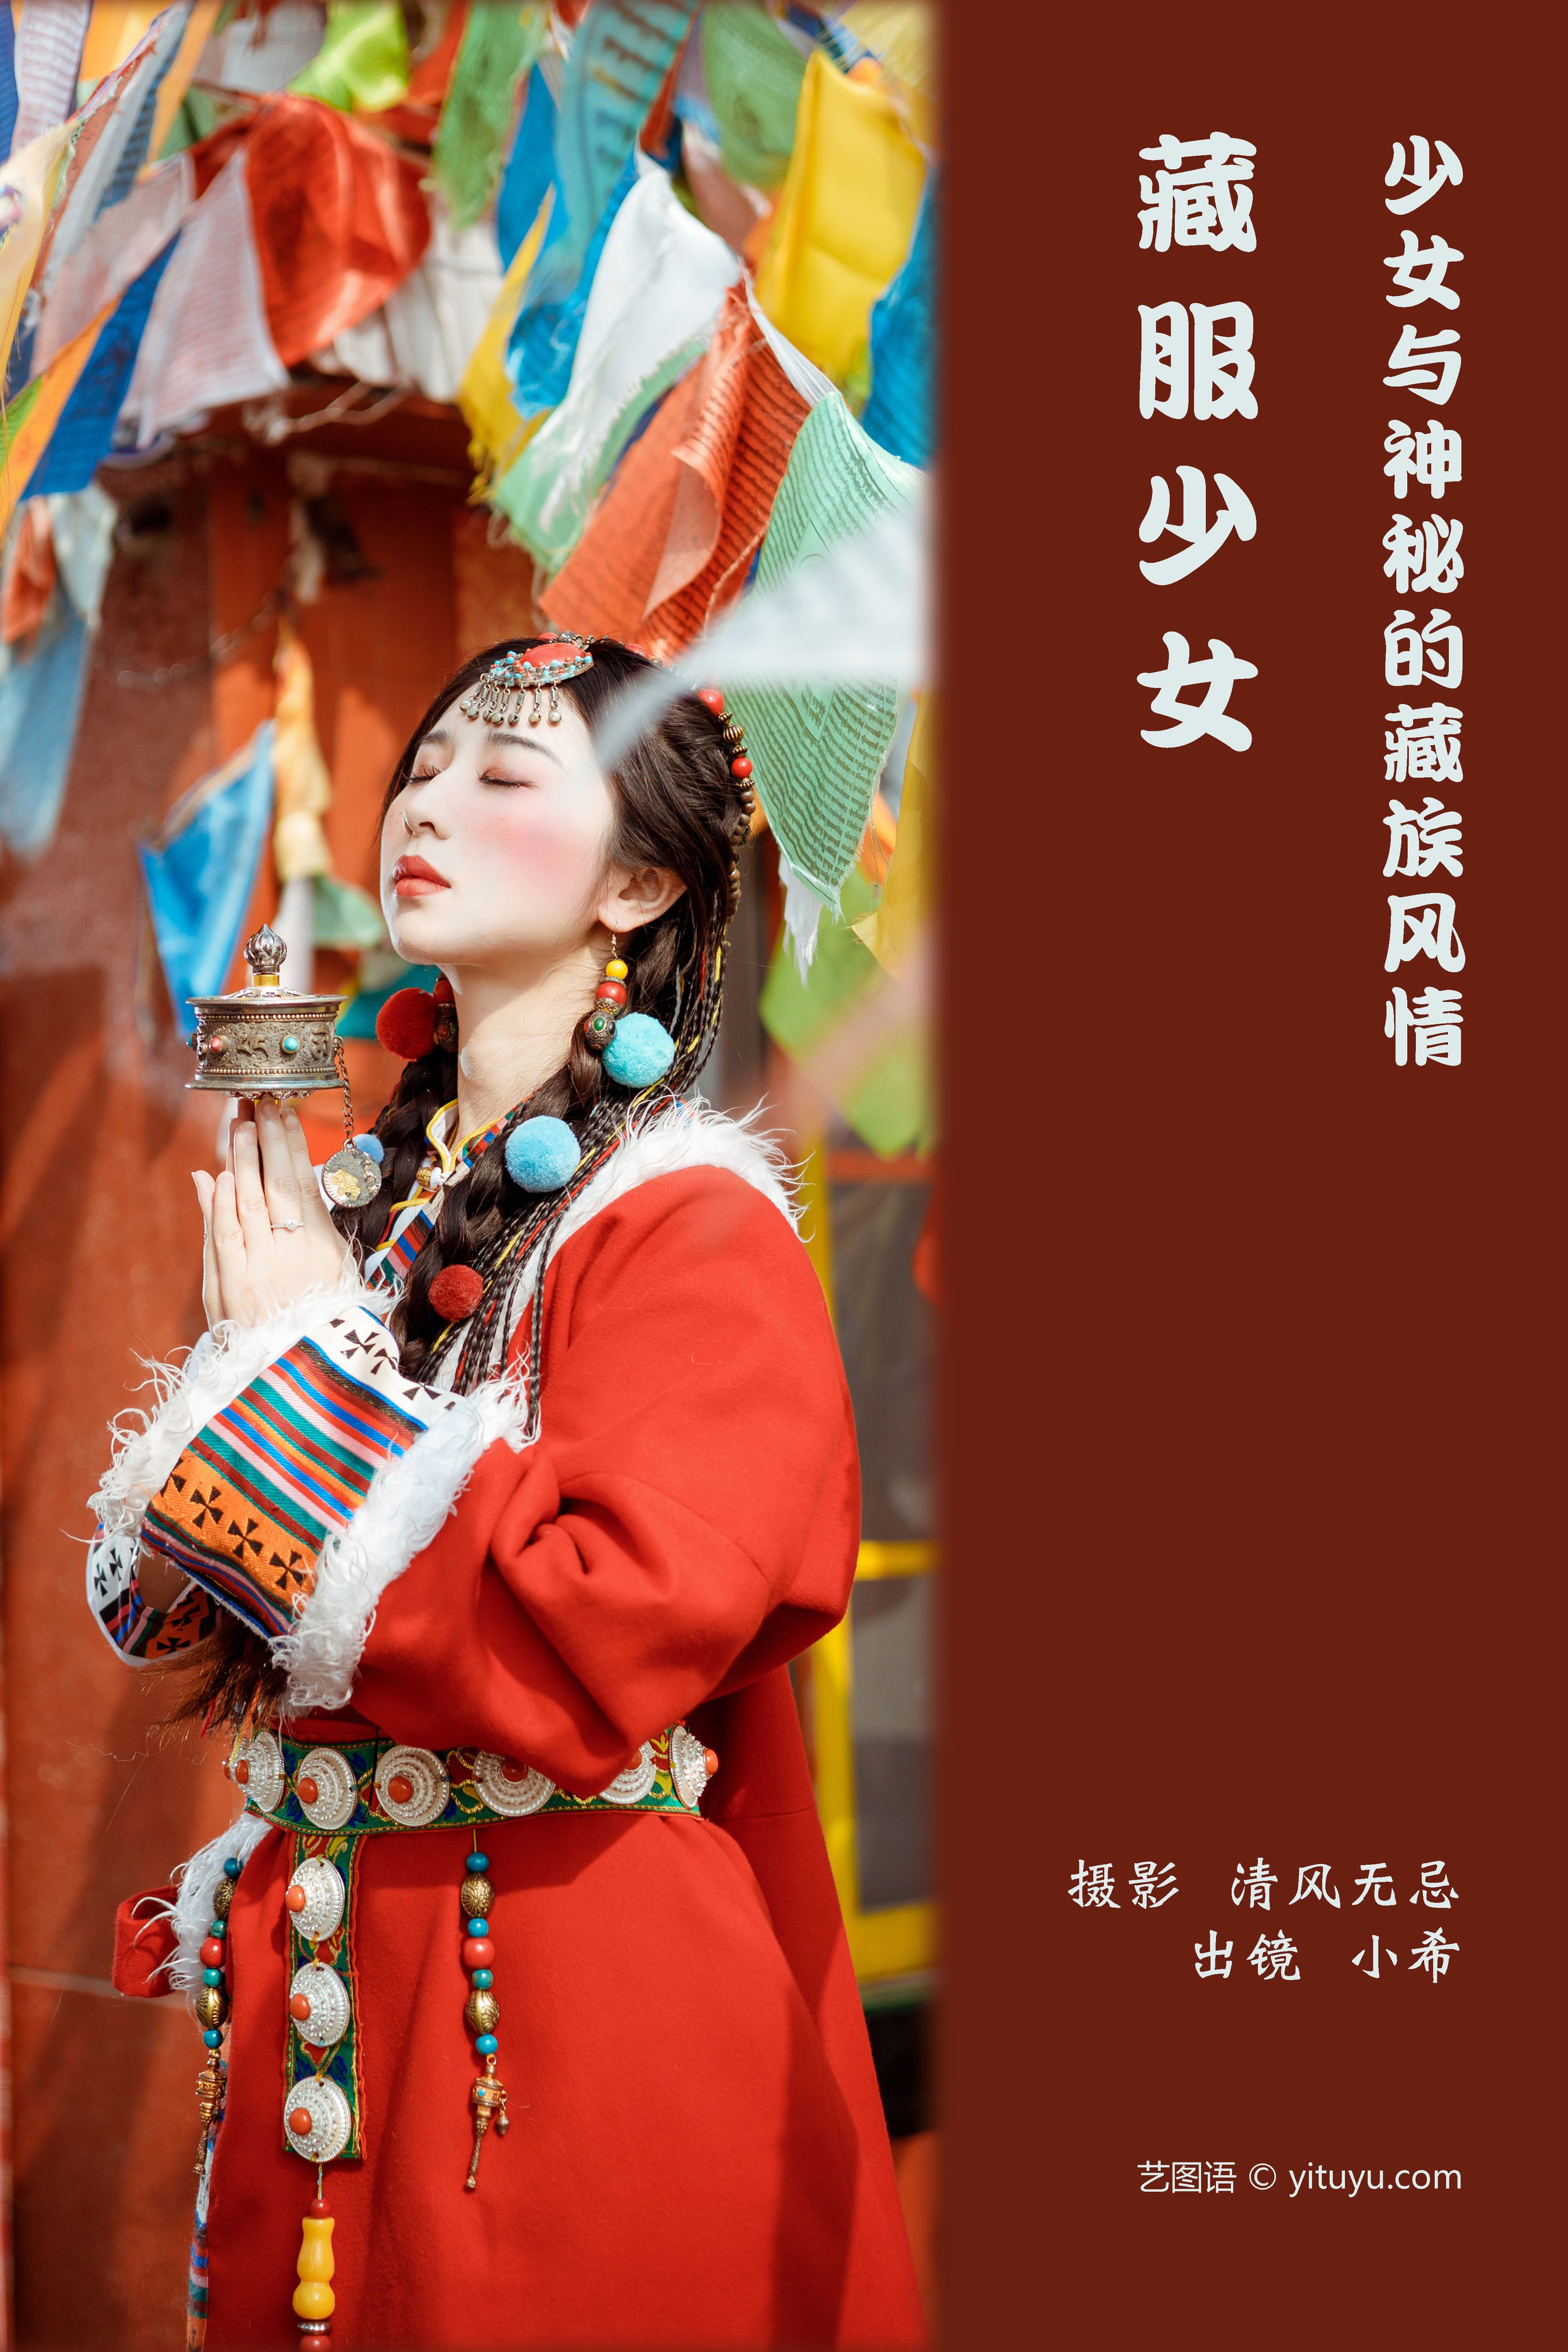 藏服少女 少女 藏族 写真 姑娘 民族风&YiTuYu艺图语 - yaya生活日志